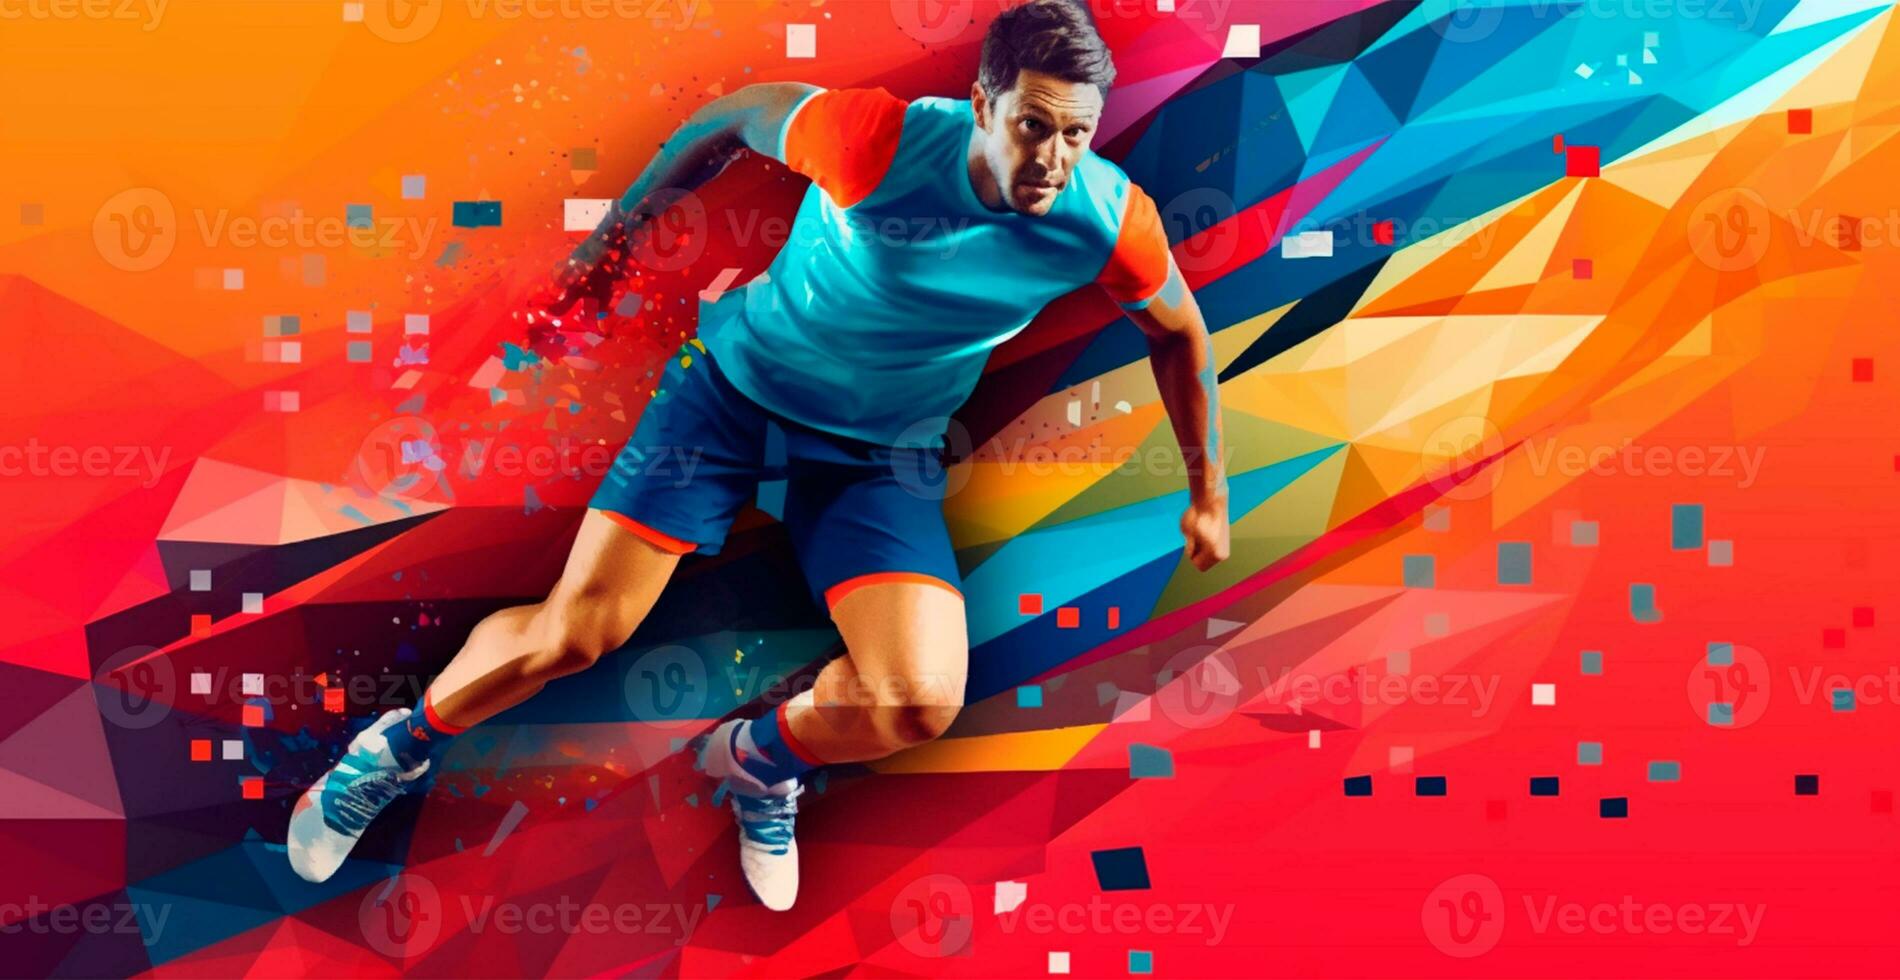 abstract voetbal speler rennen met bal, helder kleur achtergrond - ai gegenereerd beeld foto